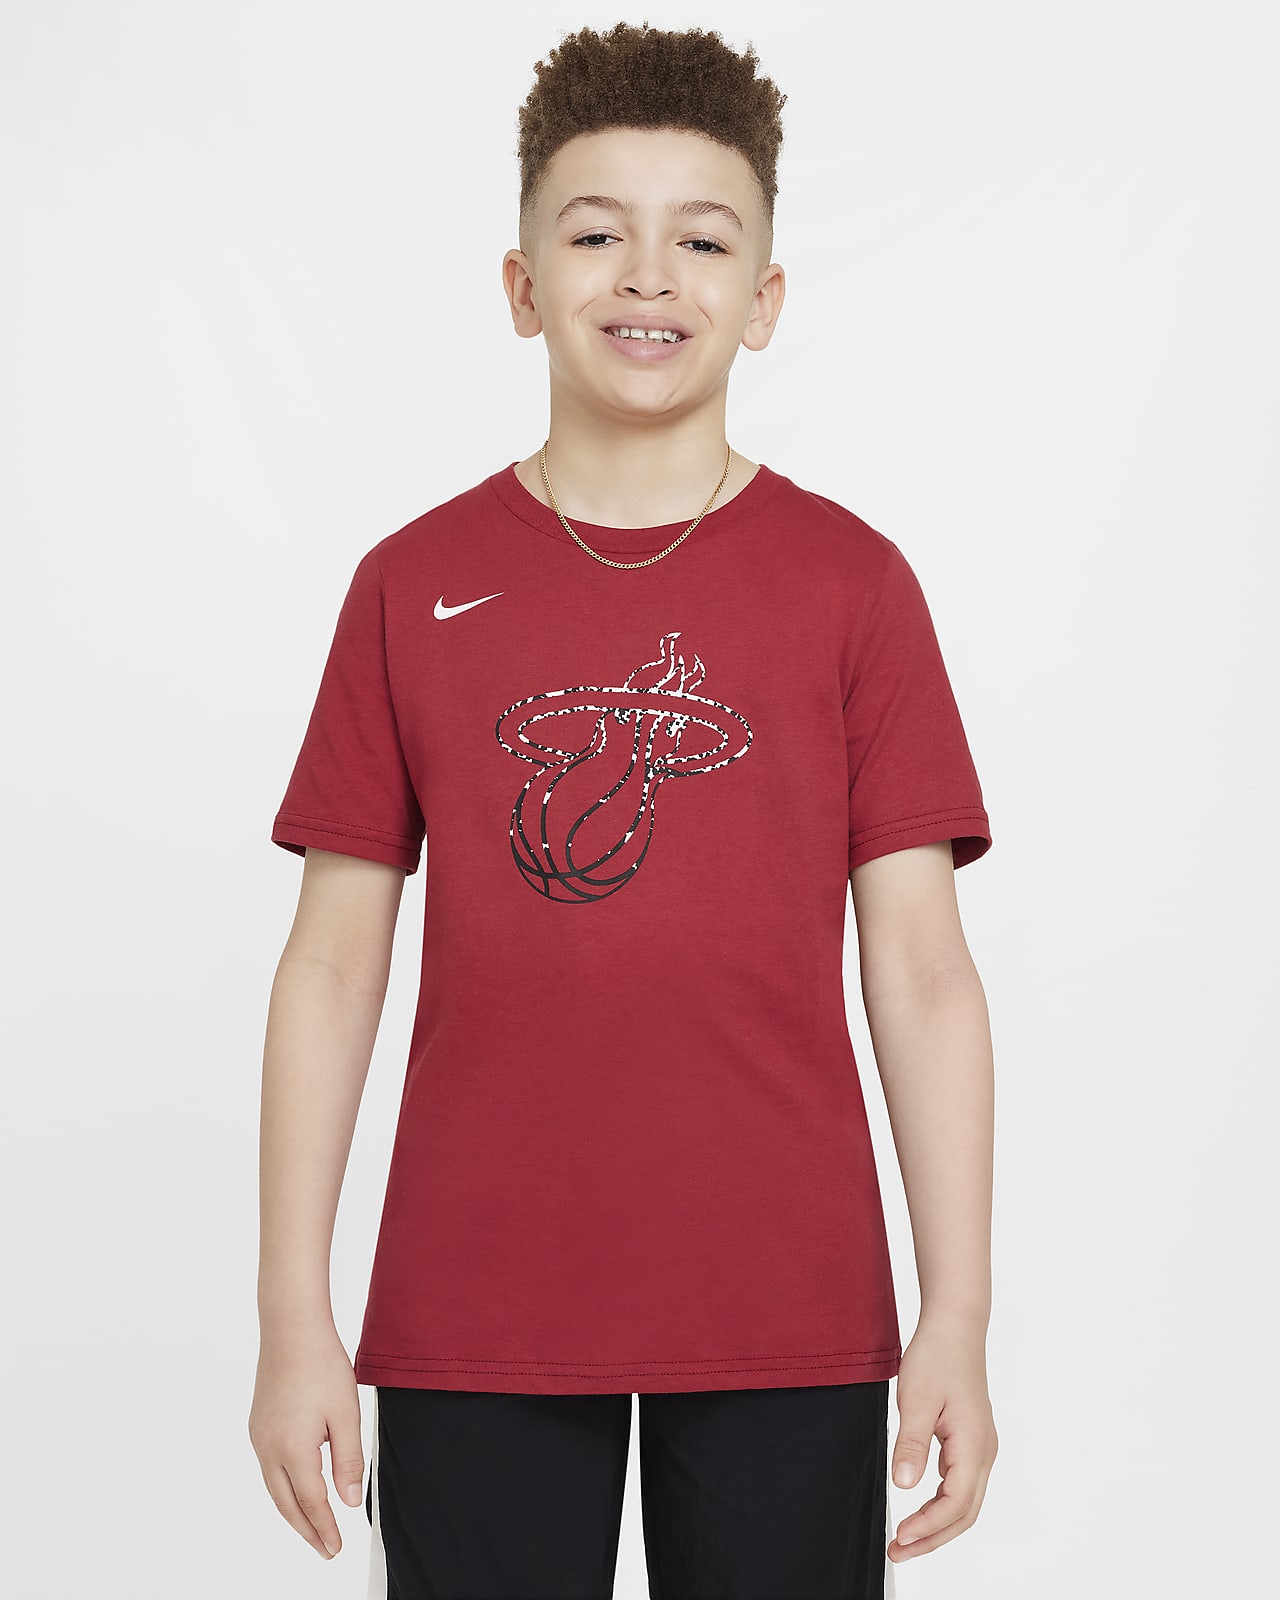 Miami Heat Essential Camiseta Nike de la NBA - Niño